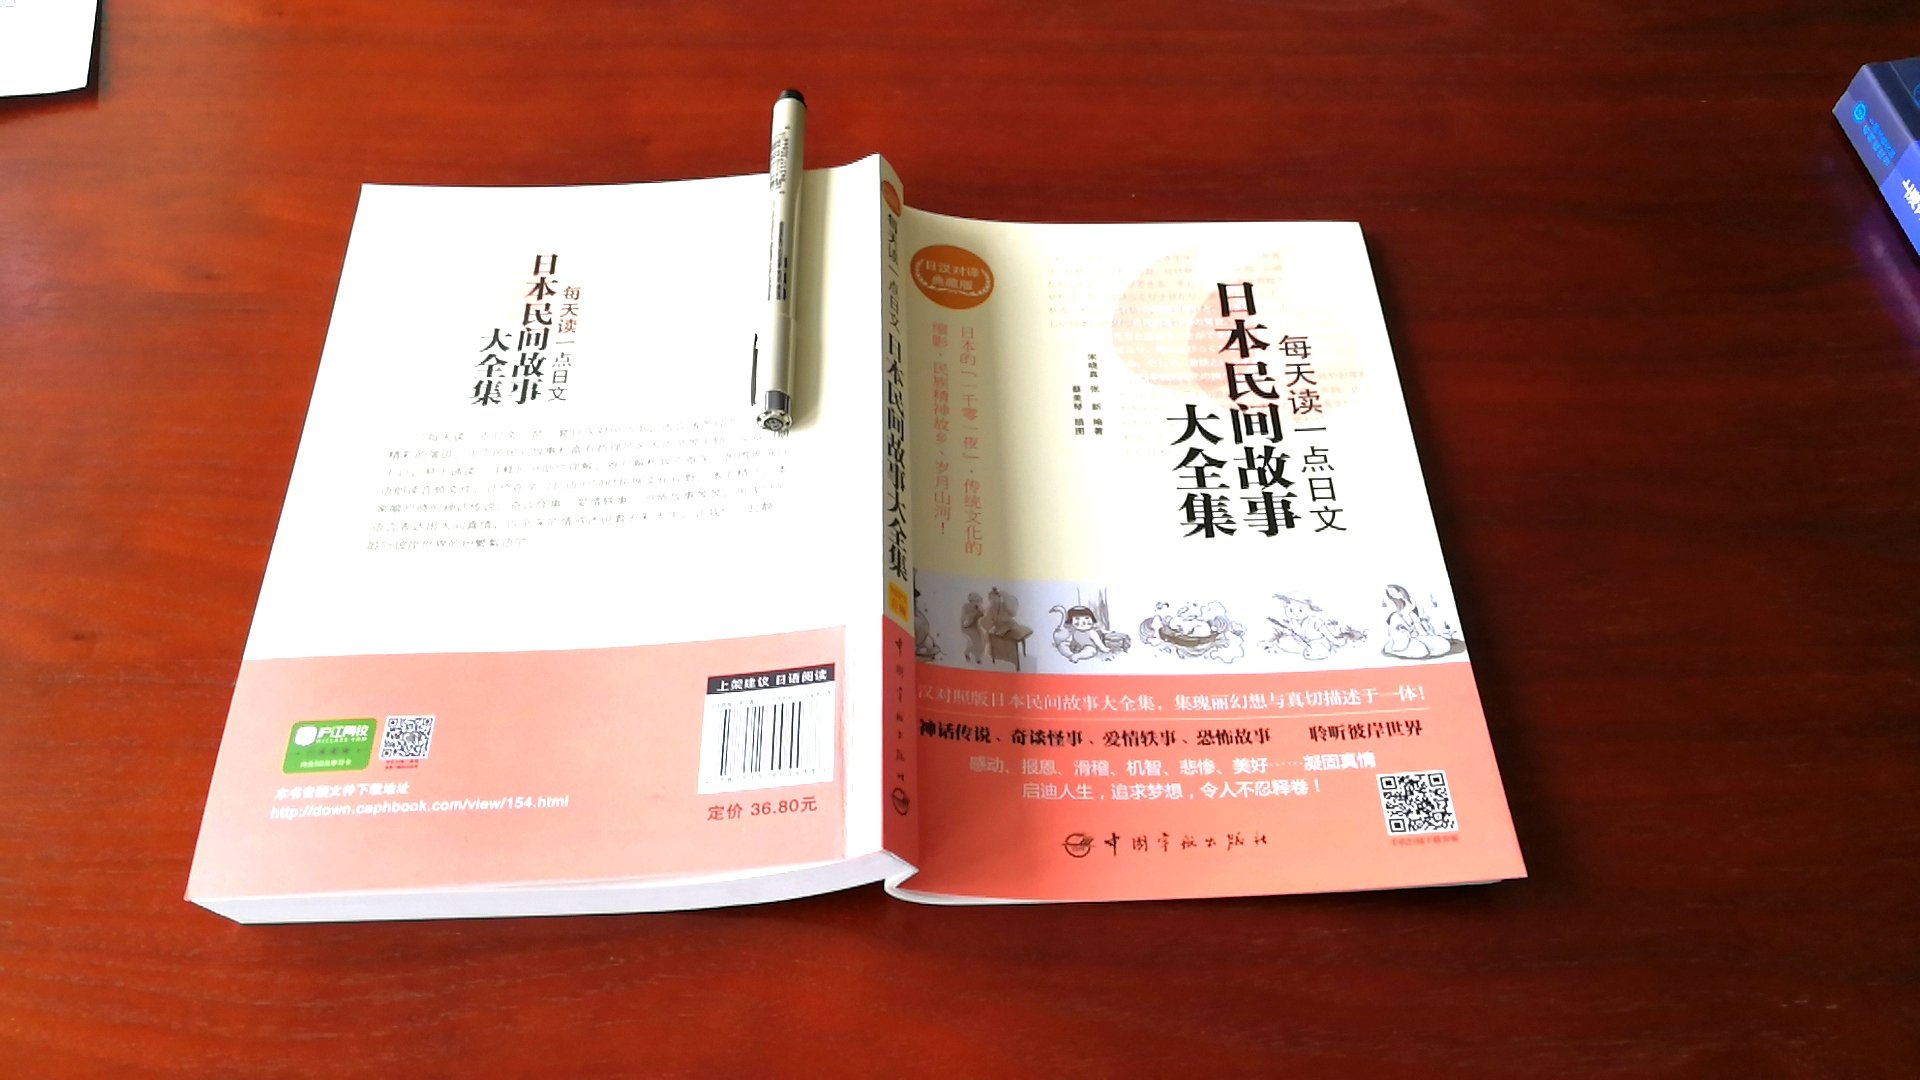 16开本，排版大气。从小就学习日本民间故事，学习日语语言の好帮手。详情请见图。甚好甚好甚好甚好！